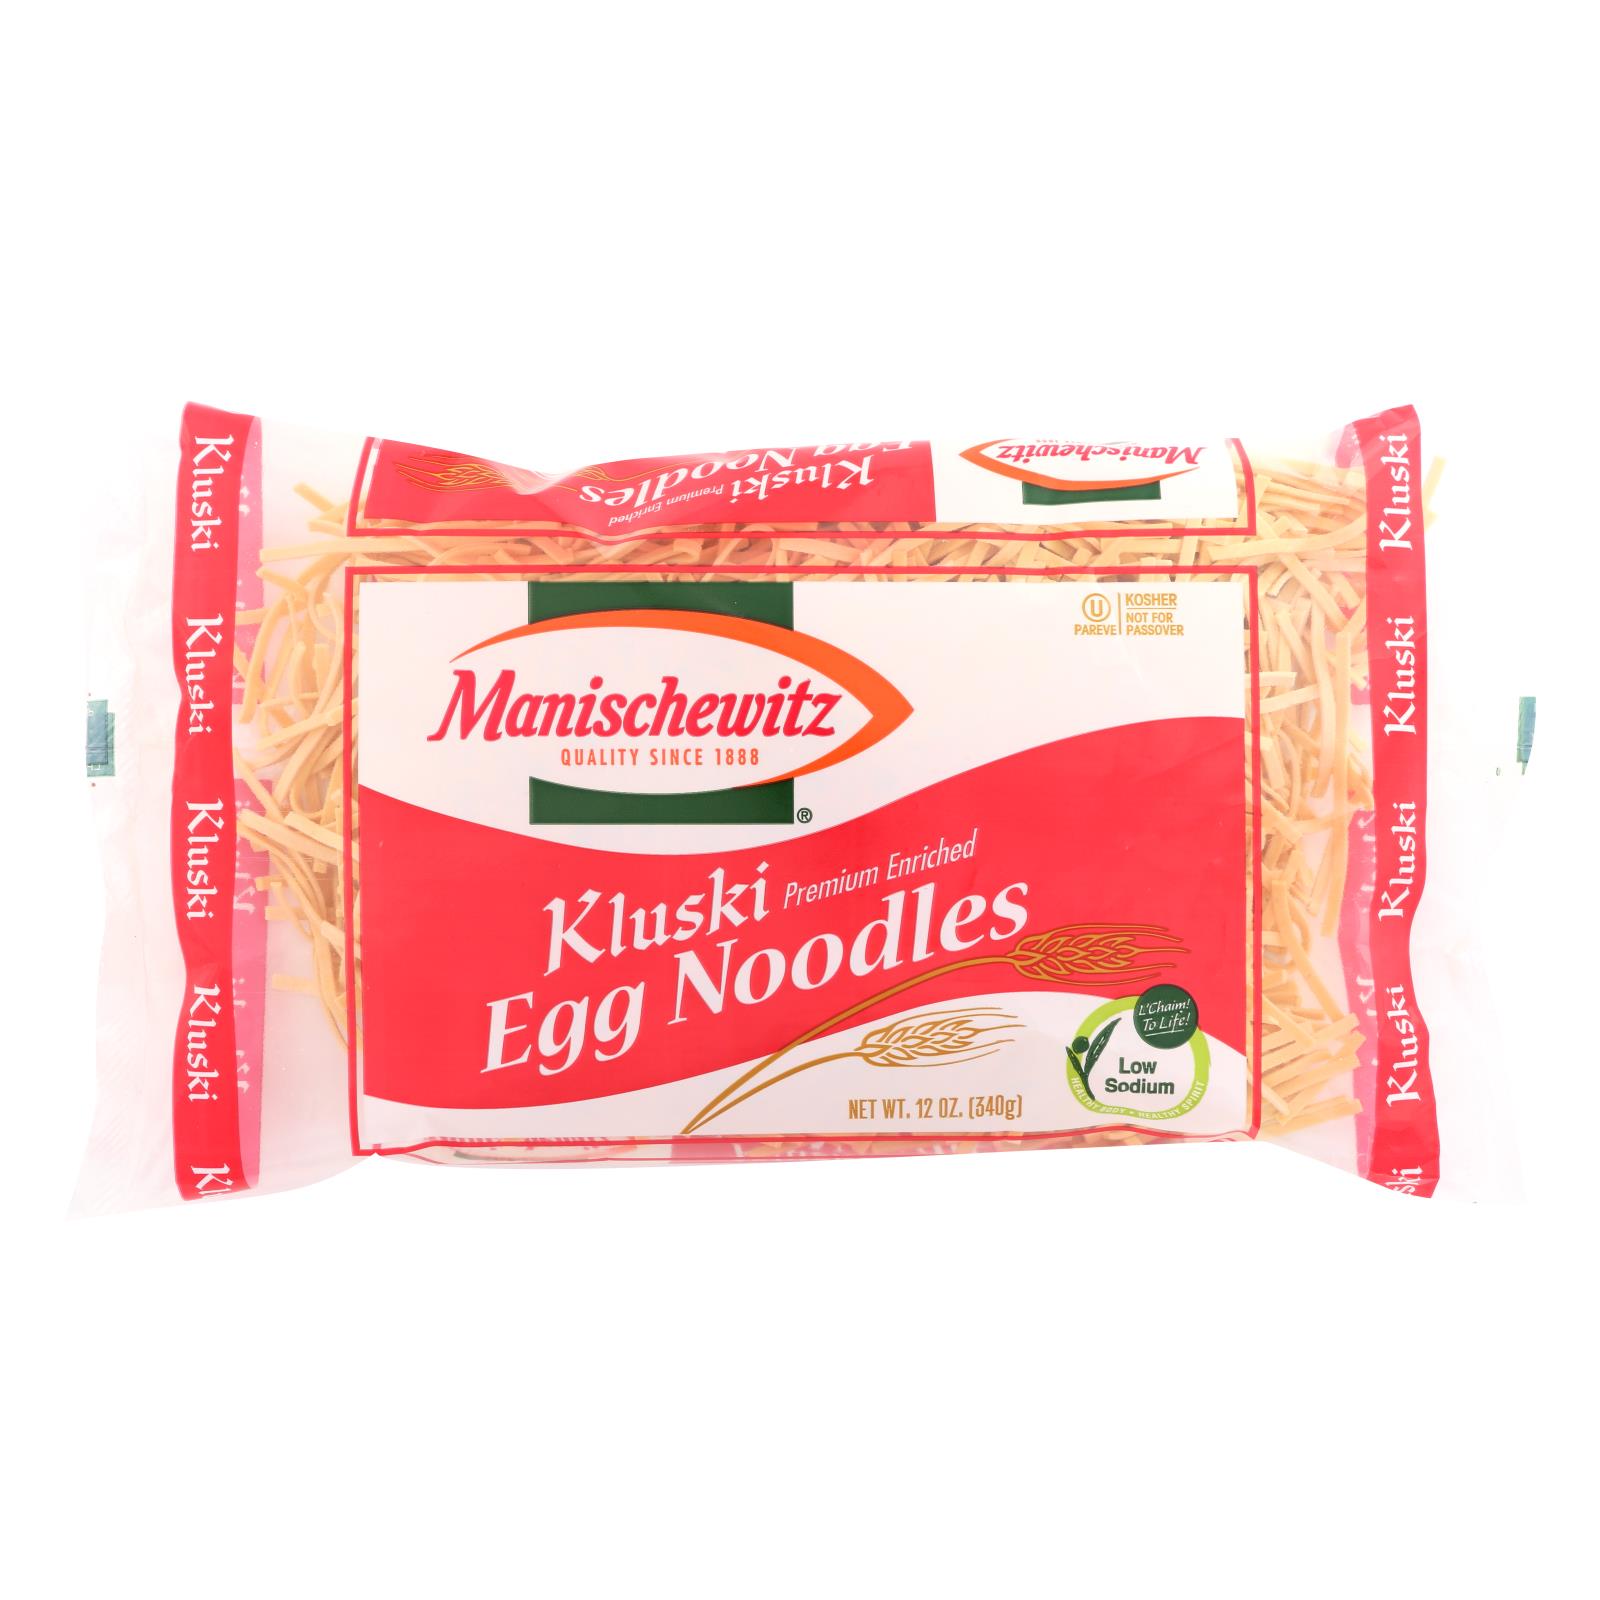 Manischewitz Kluski Premium Enriched Egg Noodles - 12개 묶음상품 - 12 OZ